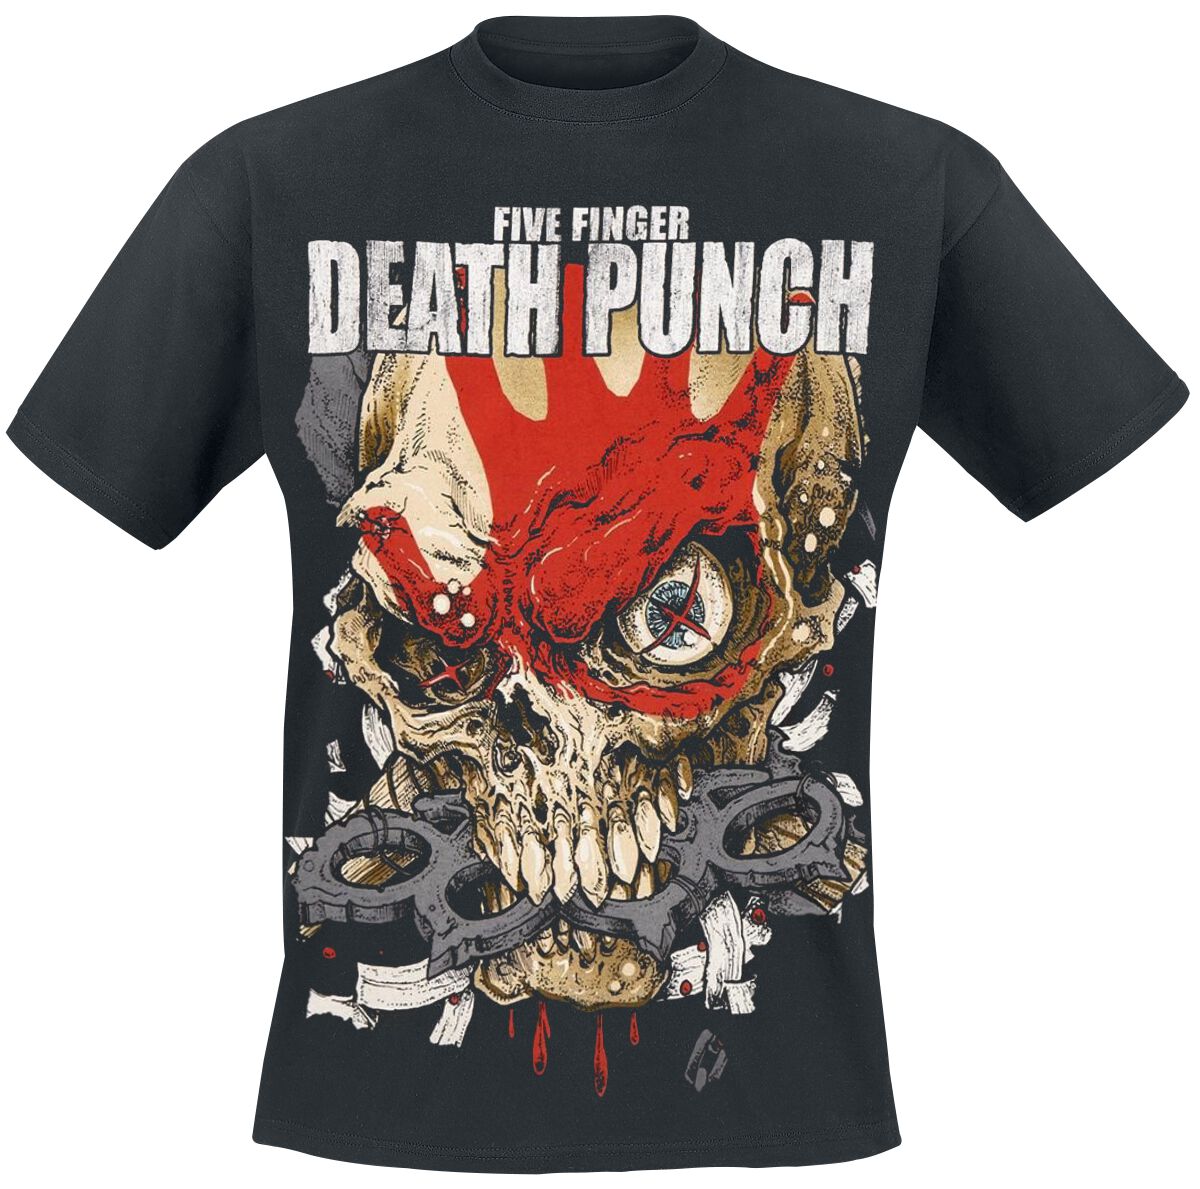 Five Finger Death Punch T-Shirt - Knucklehead Kopia Exploded - S bis XXL - für Männer - Größe XL - schwarz  - Lizenziertes Merchandise!